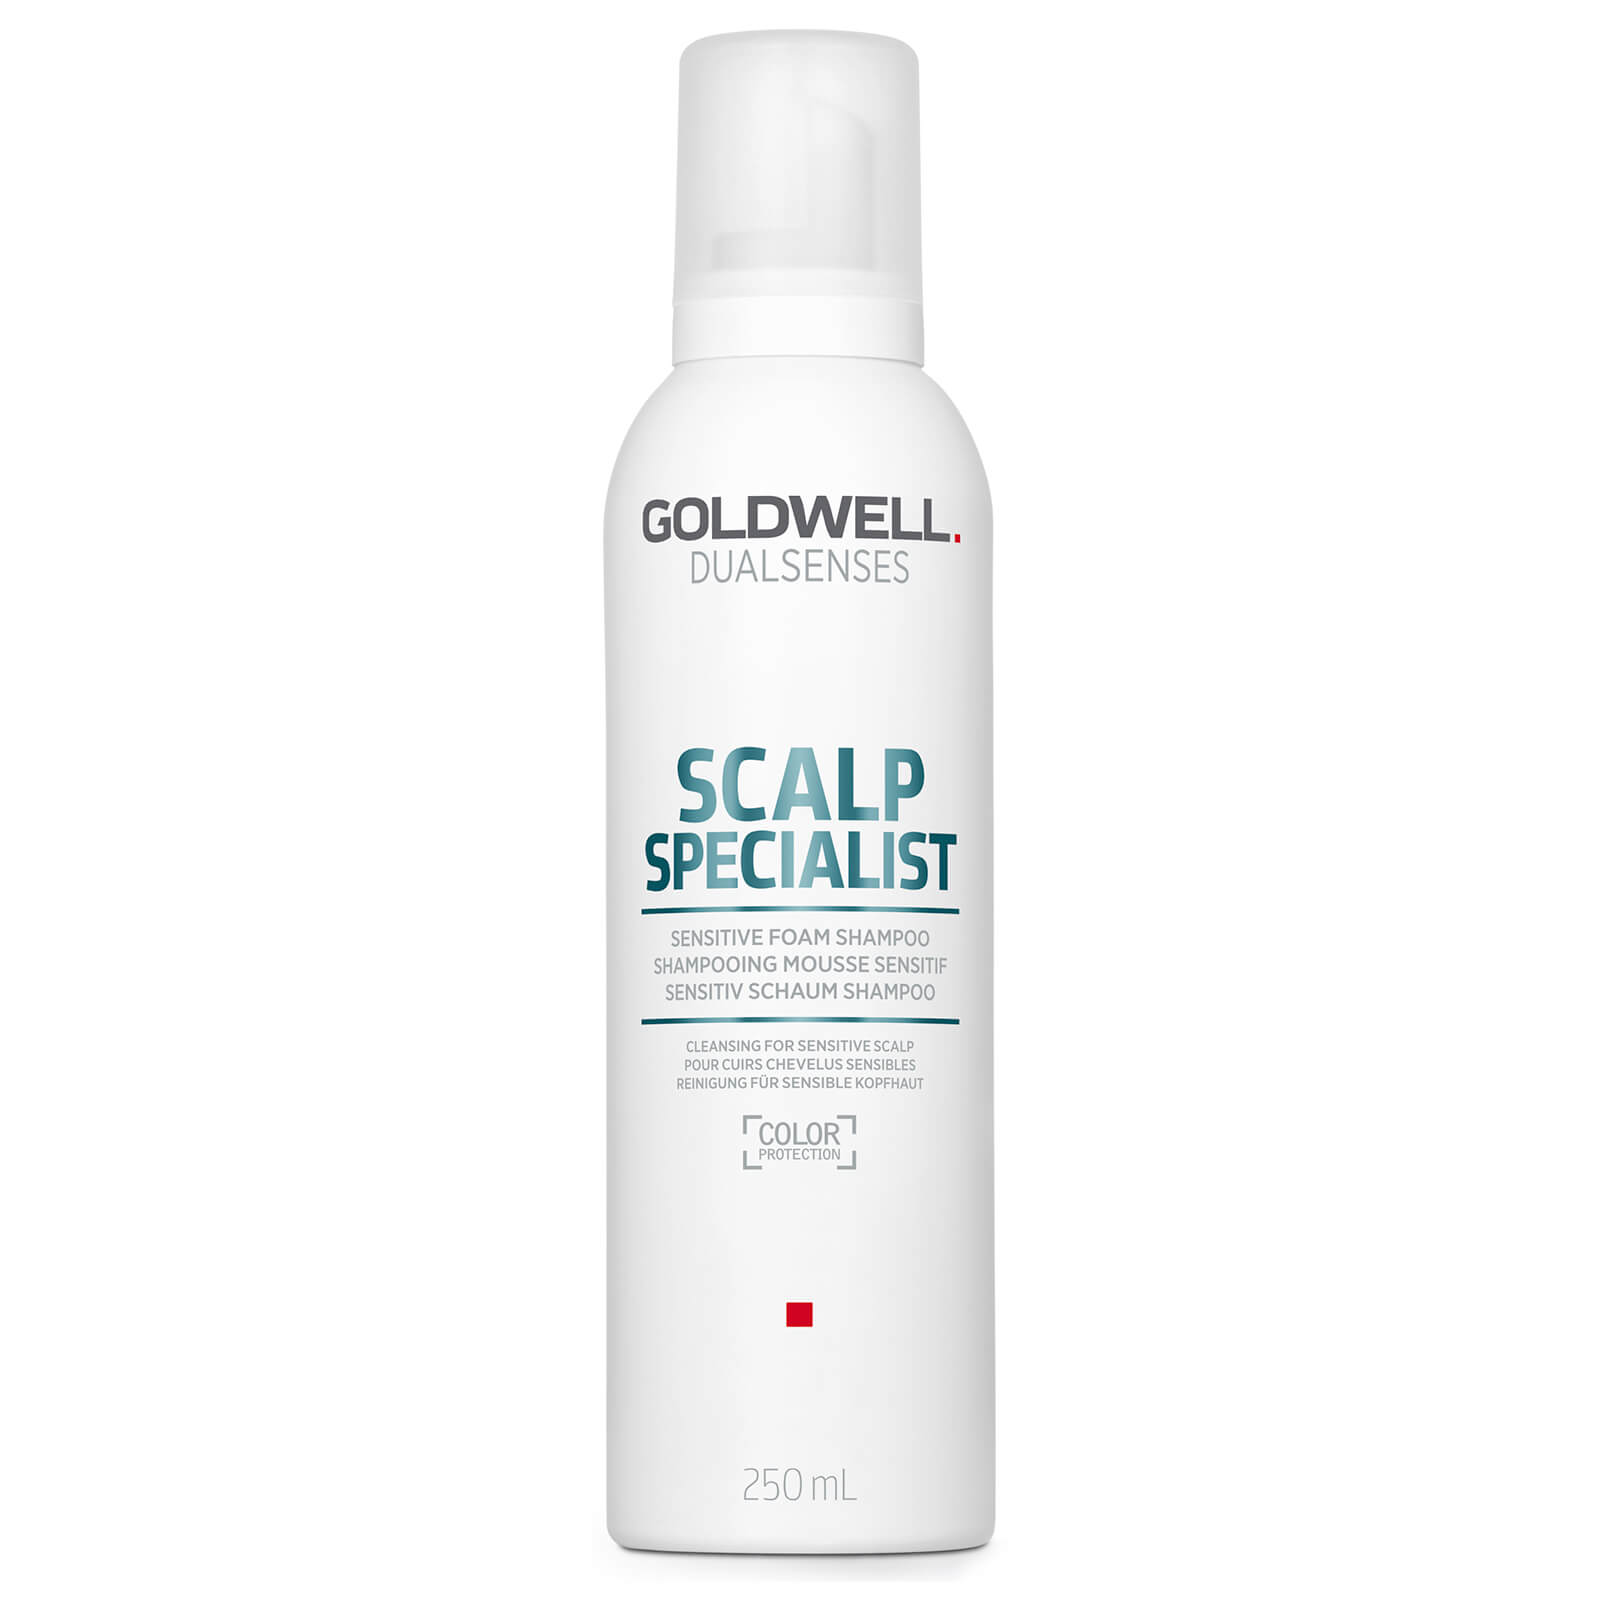 Goldwell Dualsenses Scalp Specialist Sensitive Foam Shampoo 250ml lookfantastic.com imagine